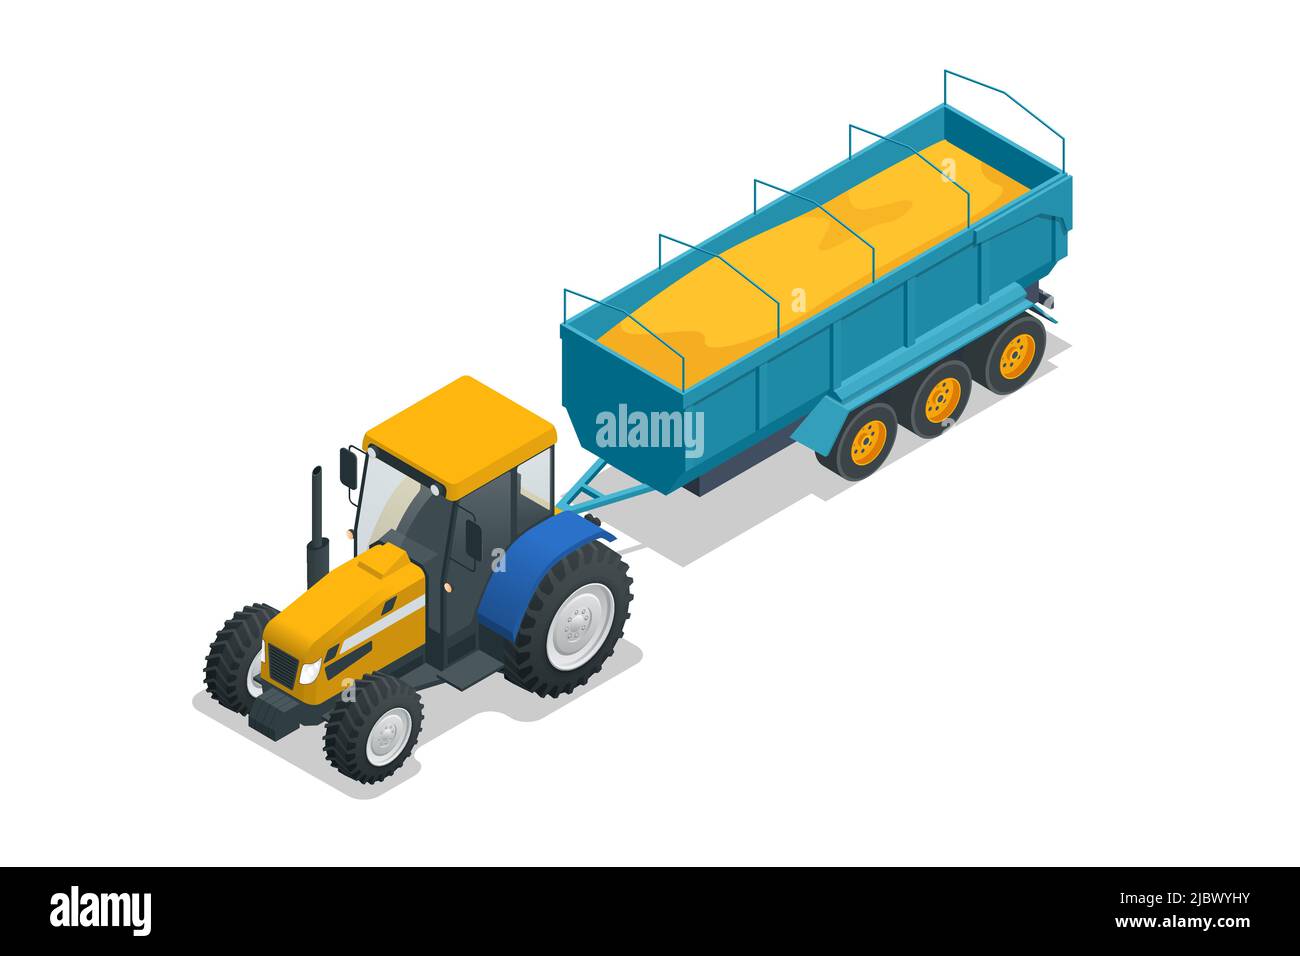 Isometrischer Traktor für die Landwirtschaft mit Korntrichter. Semi-Traktor und verwendet, um Schüttgüter wie Getreide zu transportieren Stock Vektor